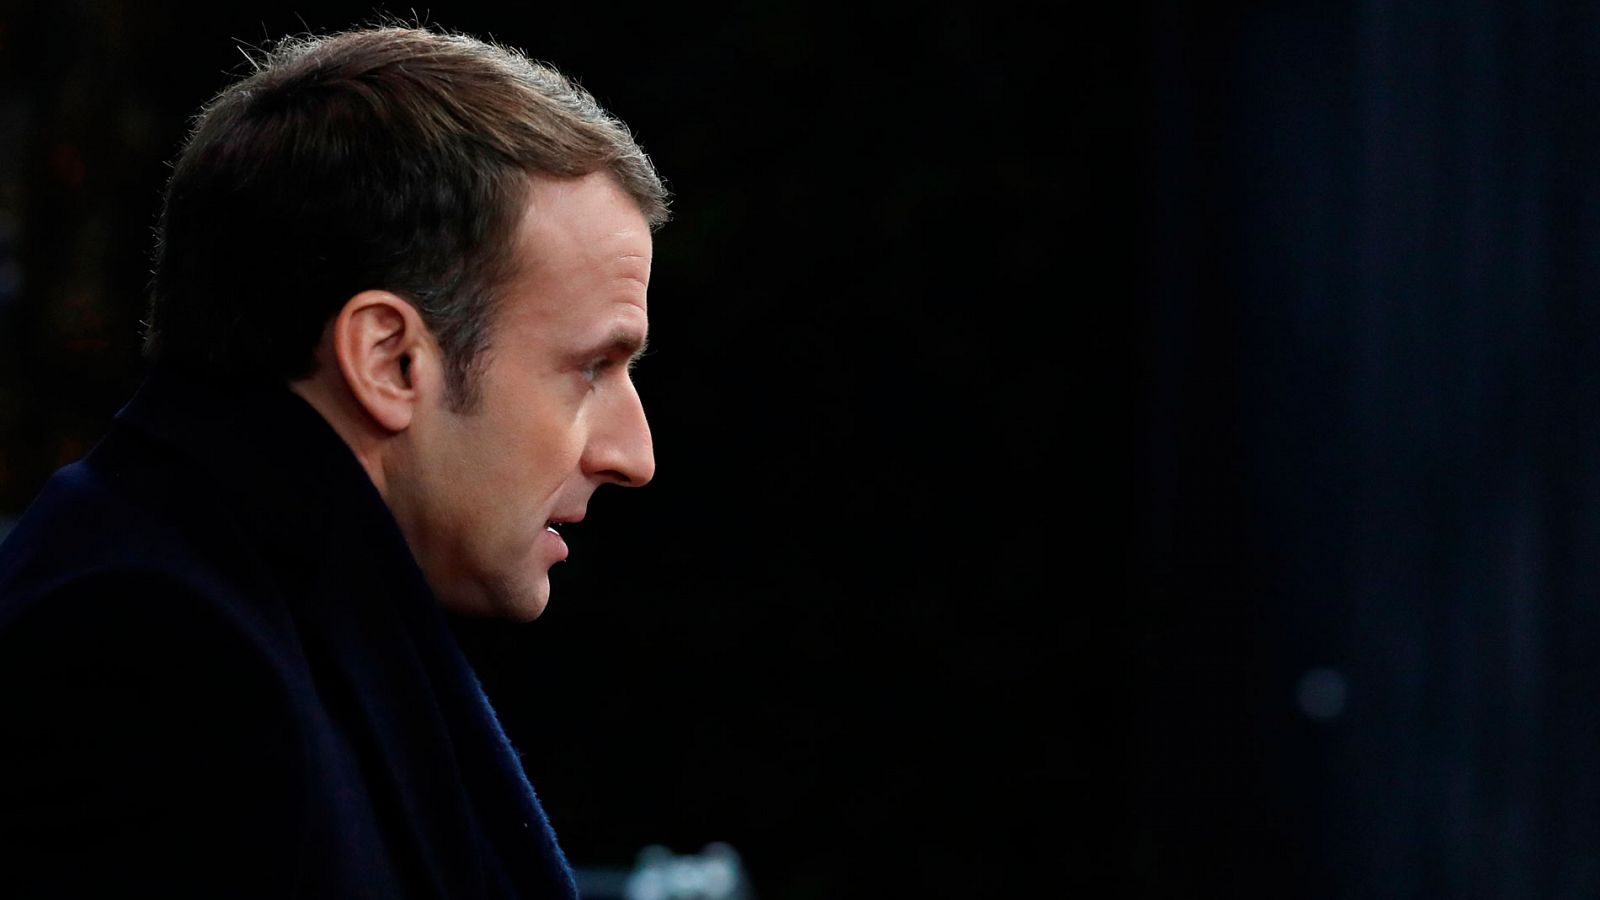 Chalecos amarillos - Macron invita a los ciudadanos a unirse a un gran debate nacional  plan para hacer frente a las revueltas de los "chalecos amarillos" - RTVE.es